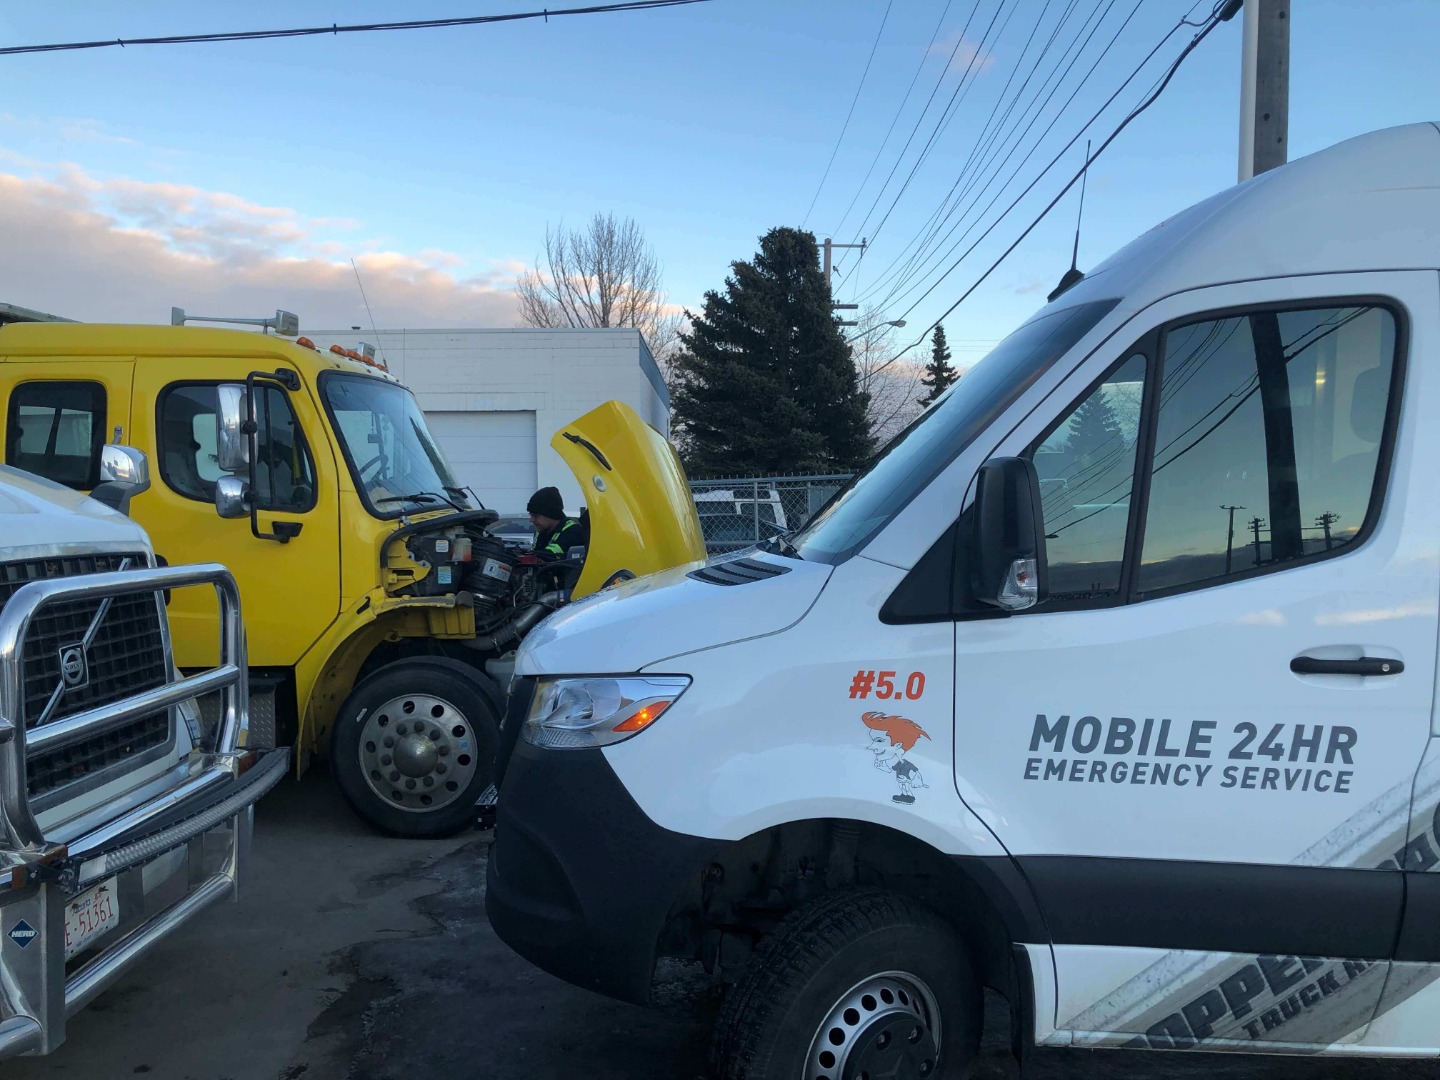 Mobile Commercial Truck Repair